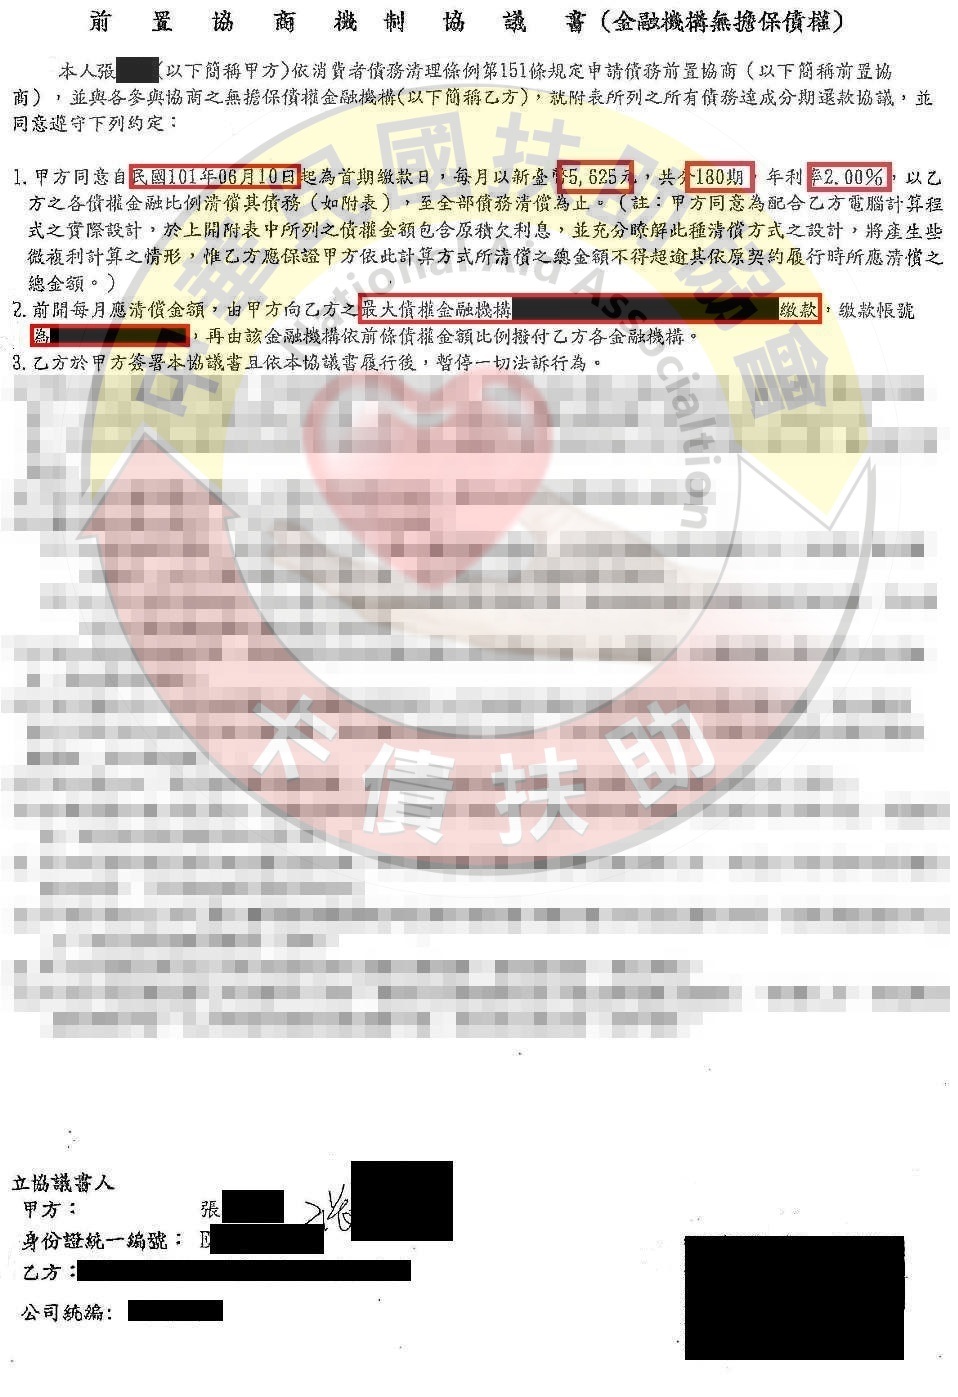 台北張小姐-協商成功依180期2%月付5,625元 